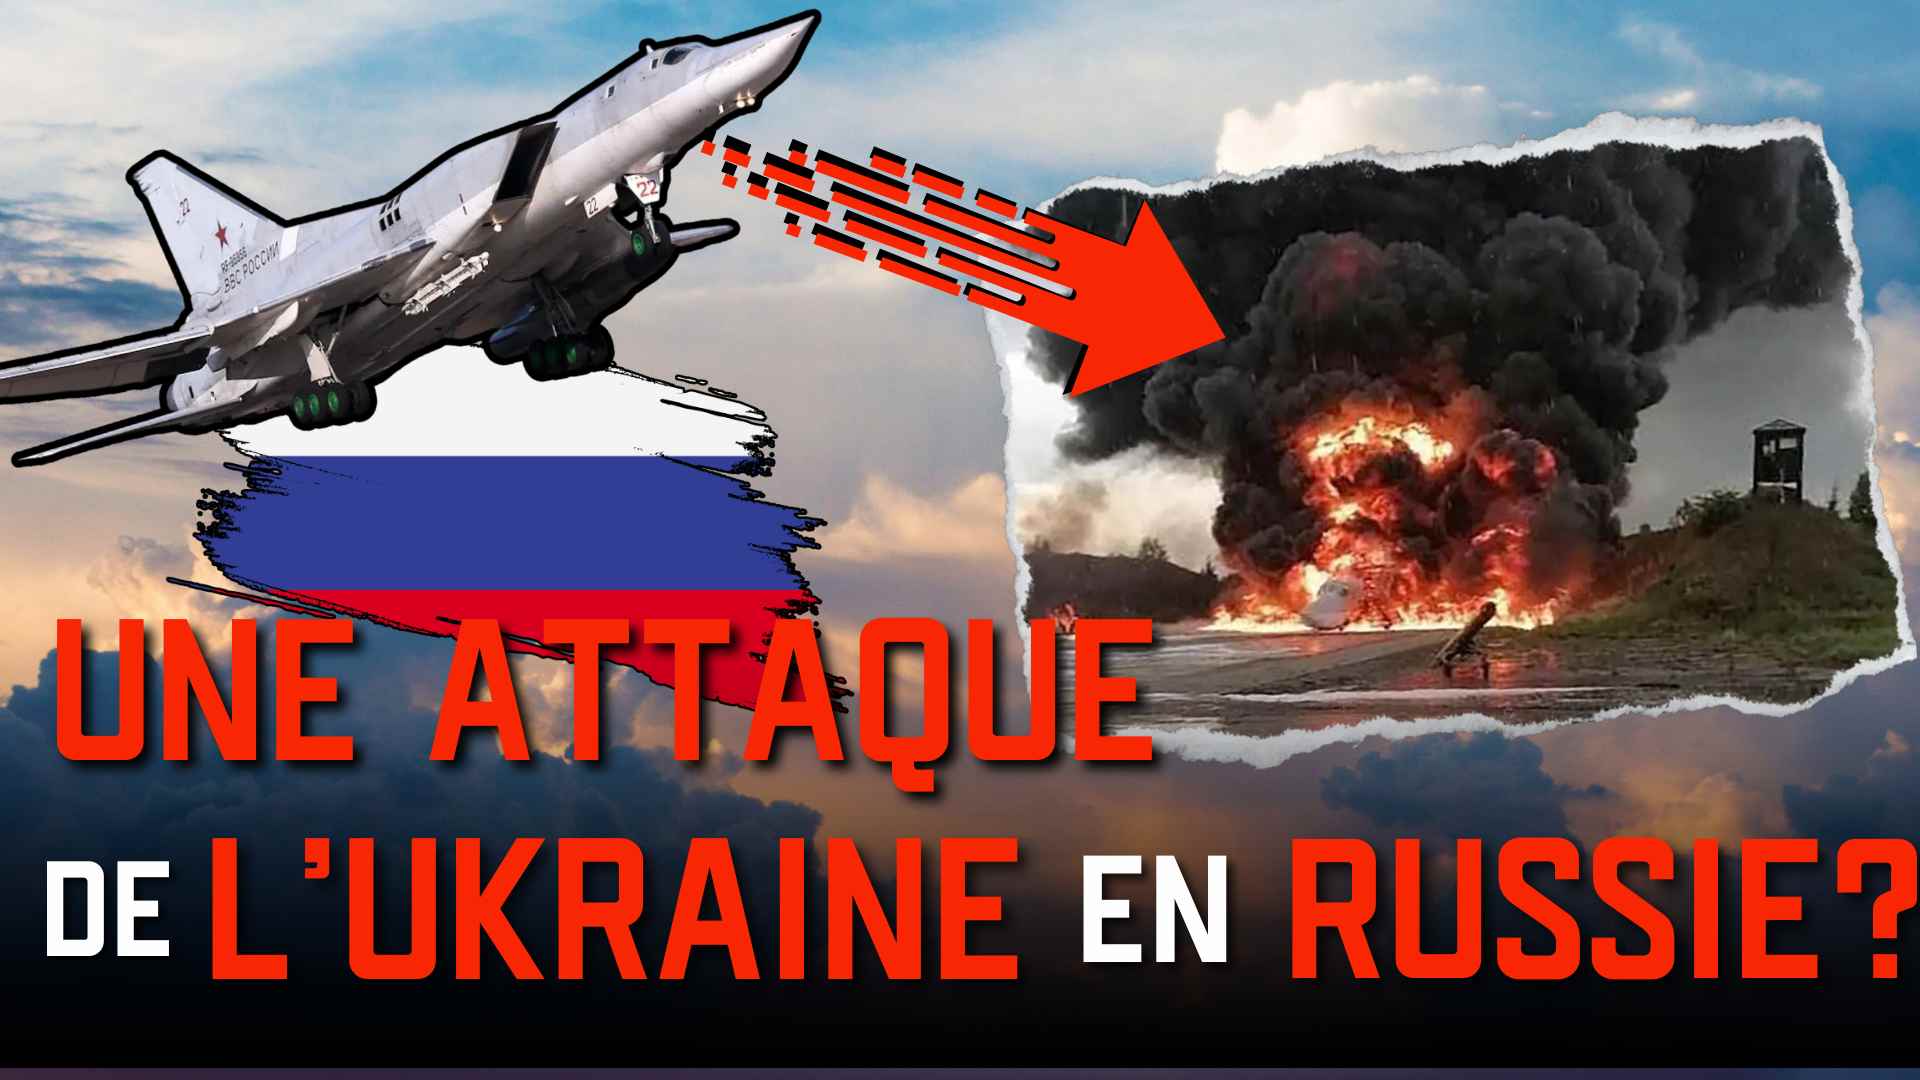 UN BOMBARDIER RUSSE DETRUIT PAR L'UKRAINE